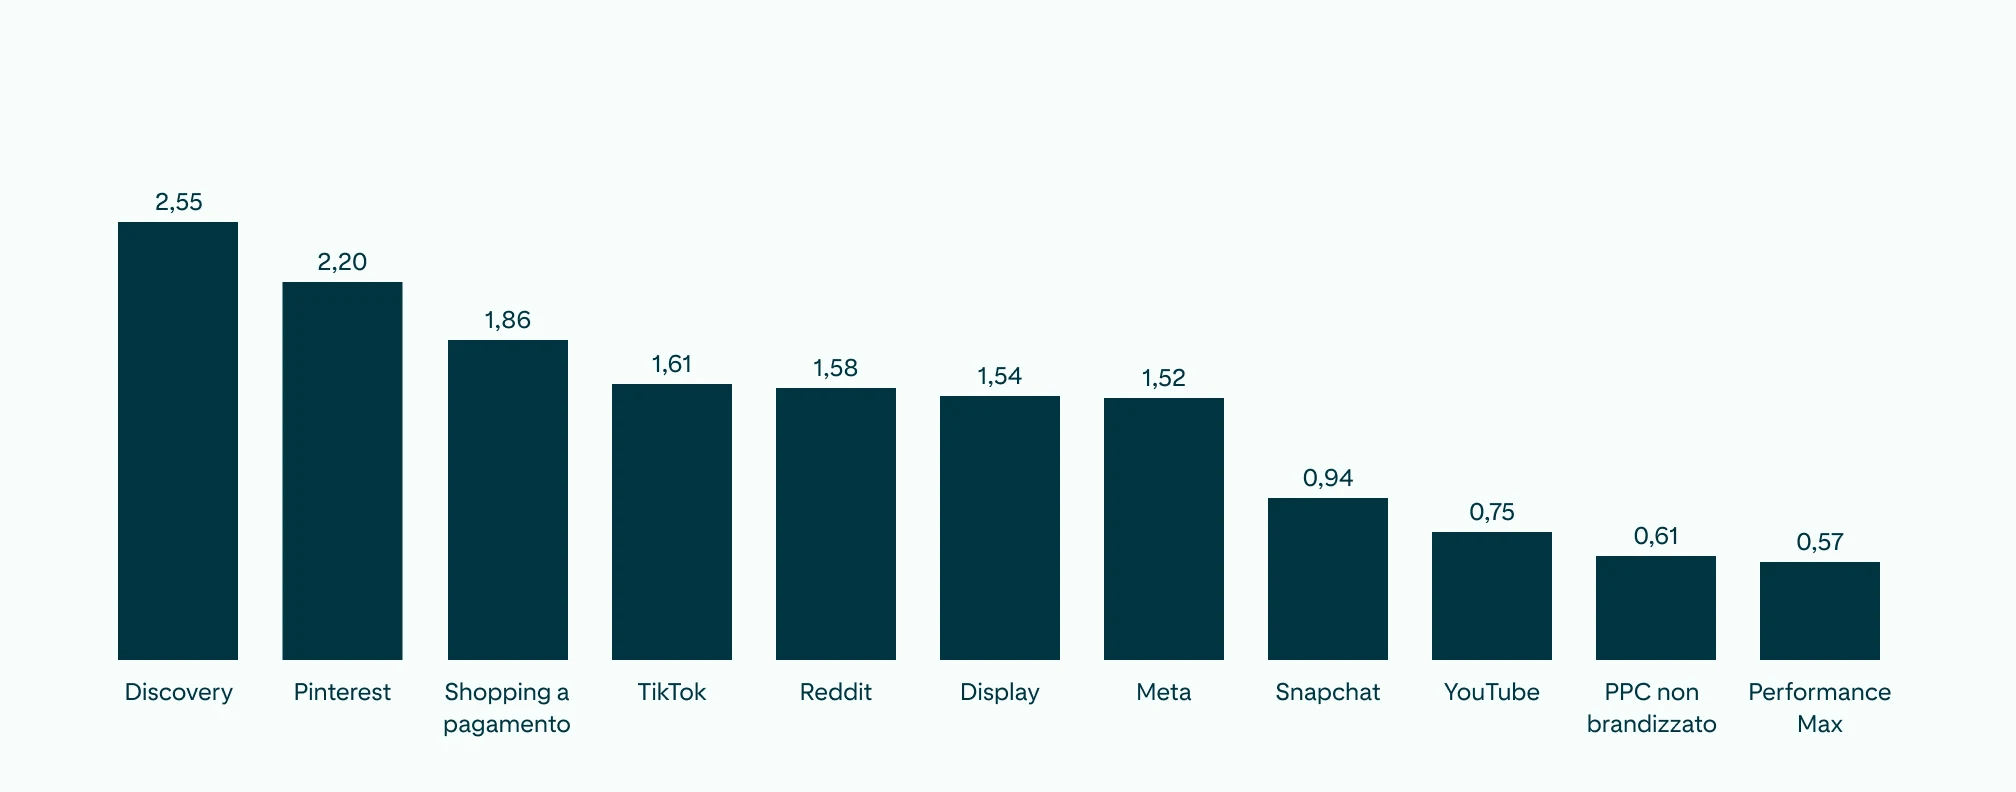    Gráfico de barras mostrando o ROAS de todos os canais de redes sociais e o Pinterest em destaque, apenas um pouco atrás do Discovery.